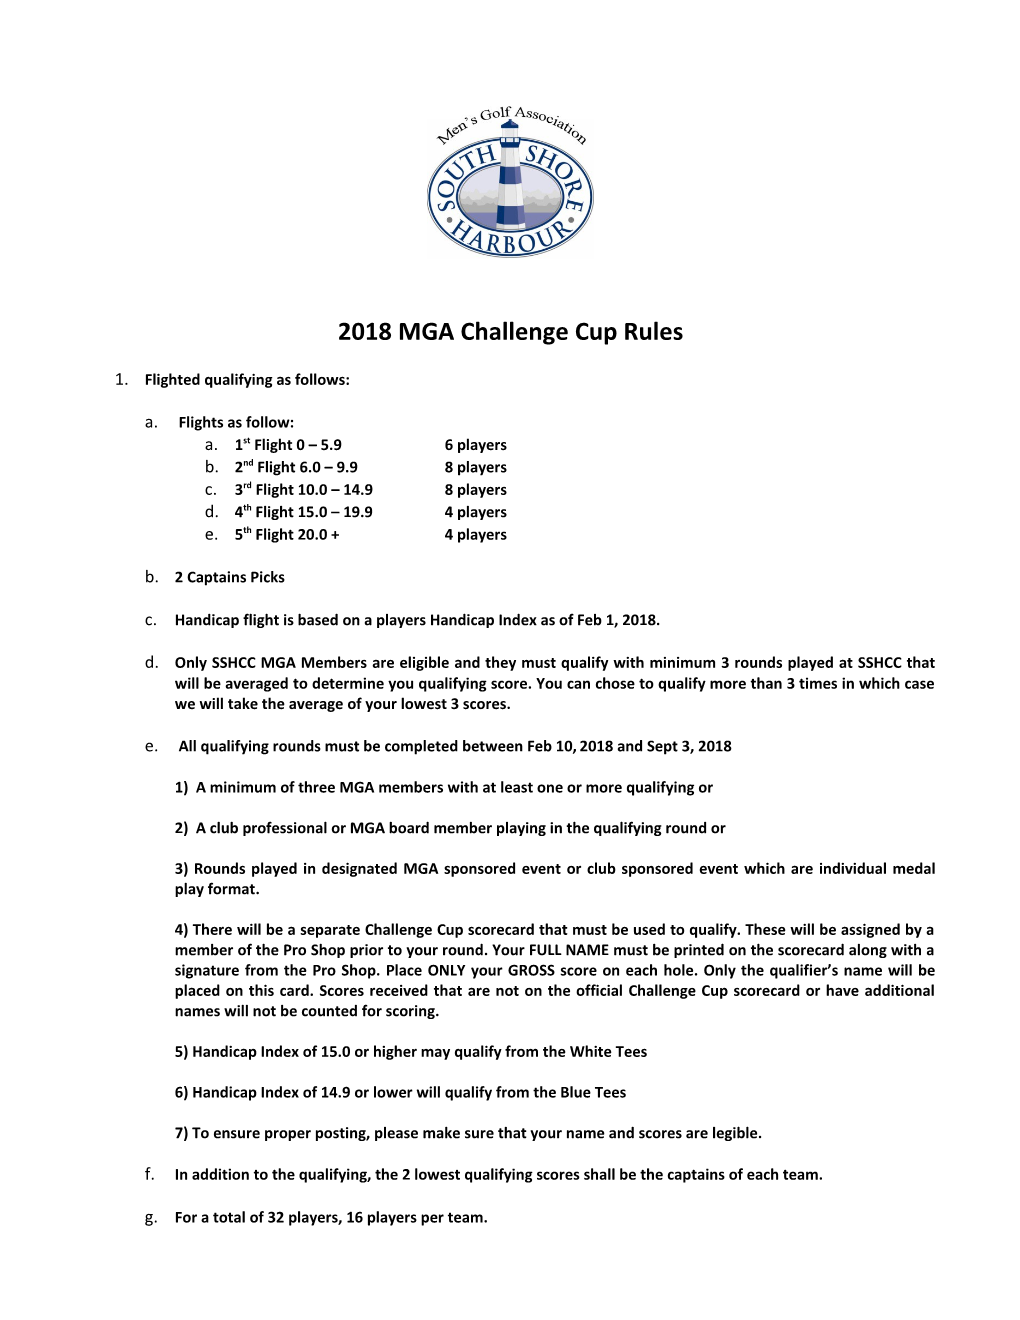 MGA Challenge Cup 2012 Rules